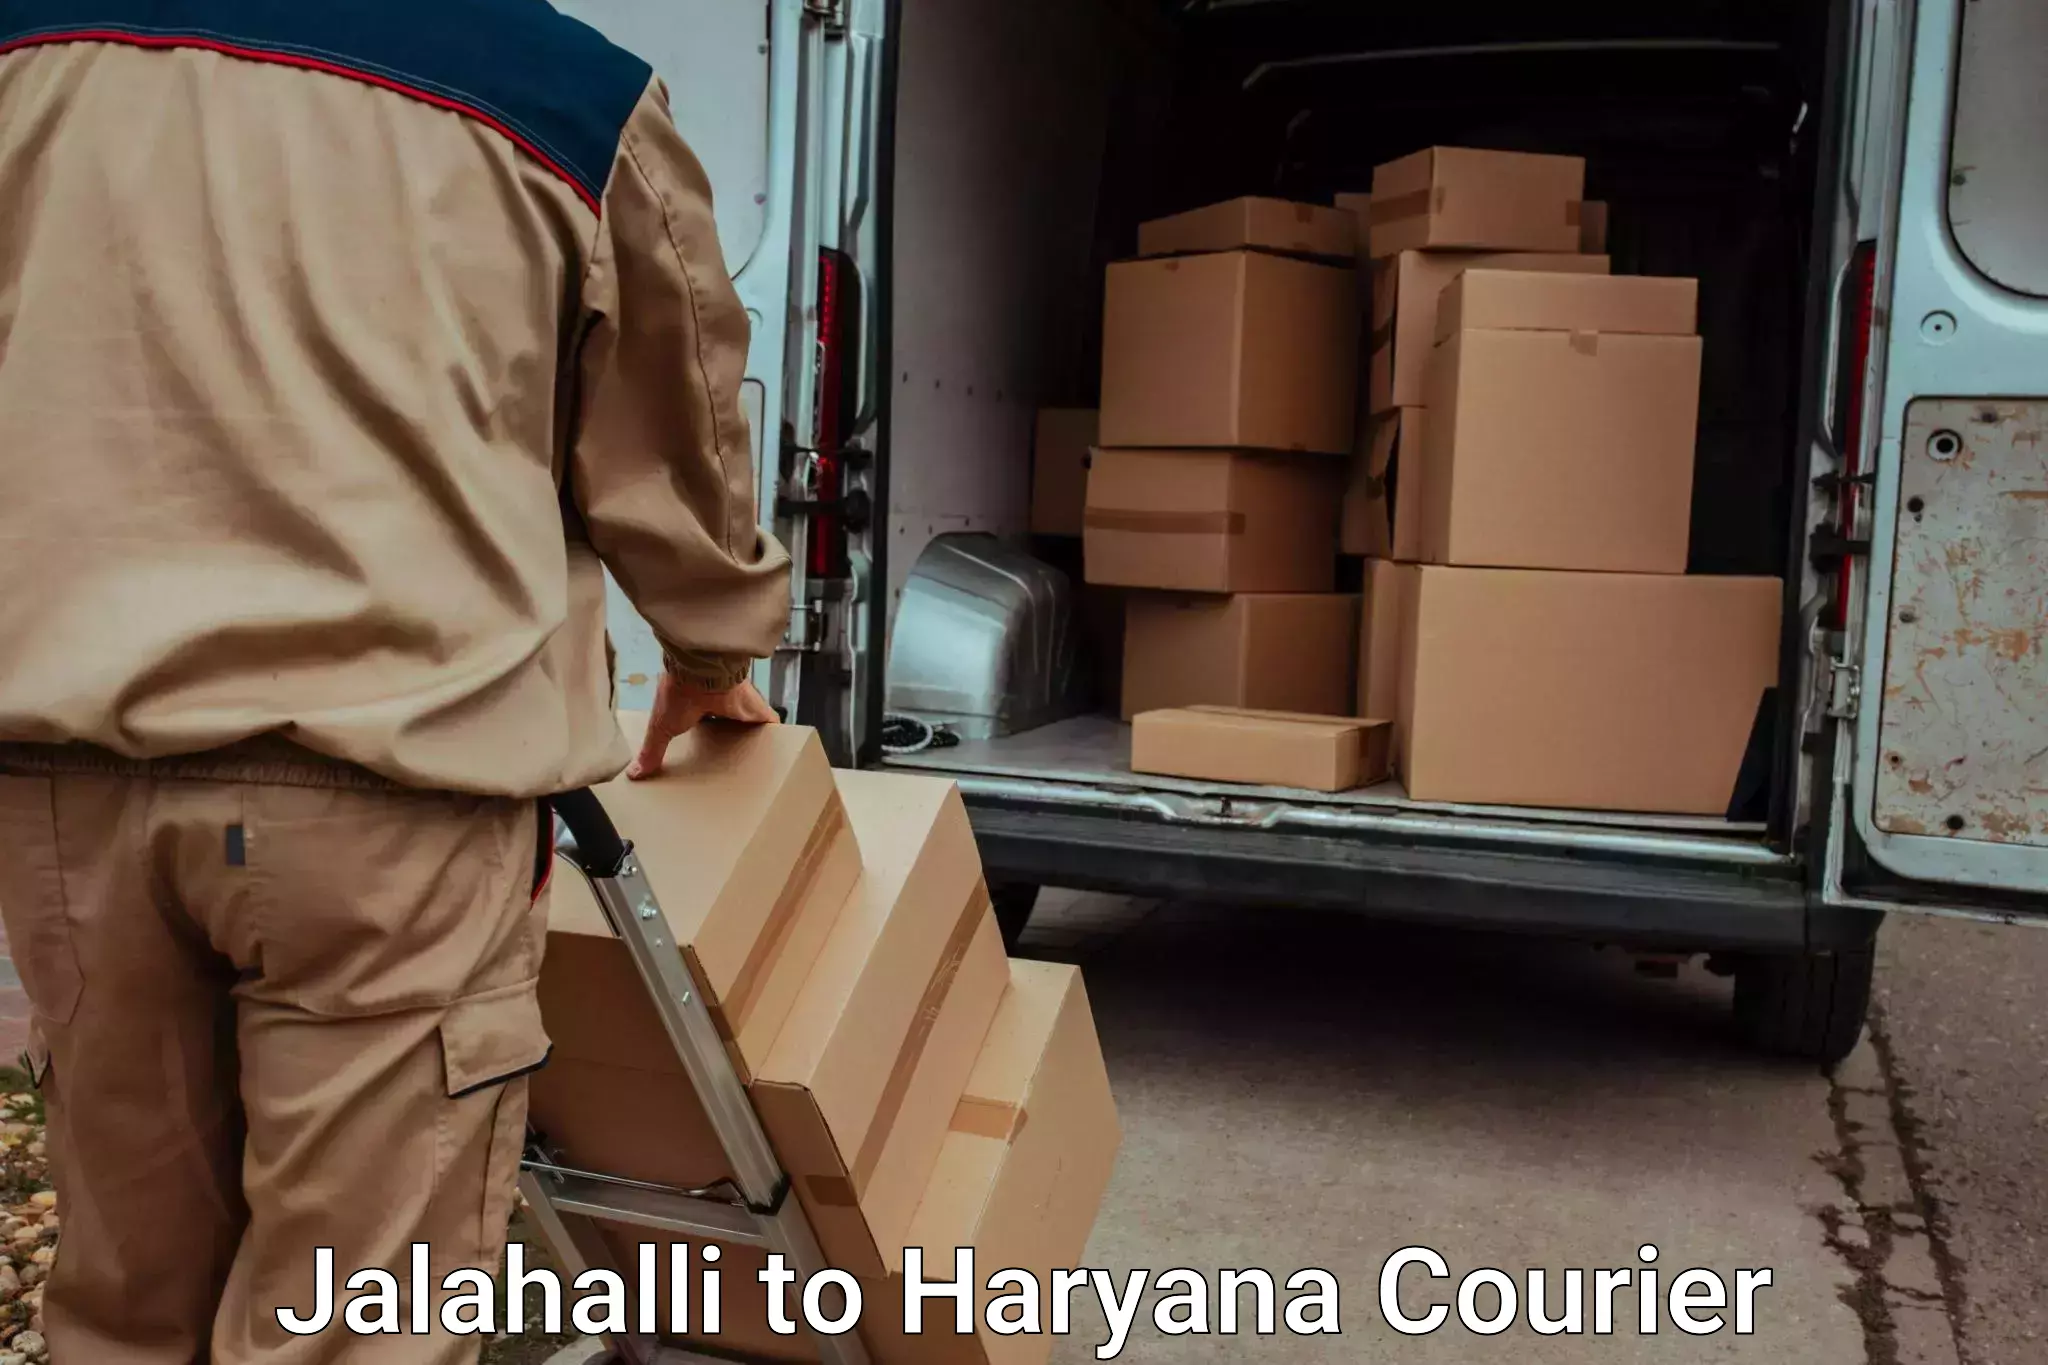 Reliable luggage courier Jalahalli to Haryana